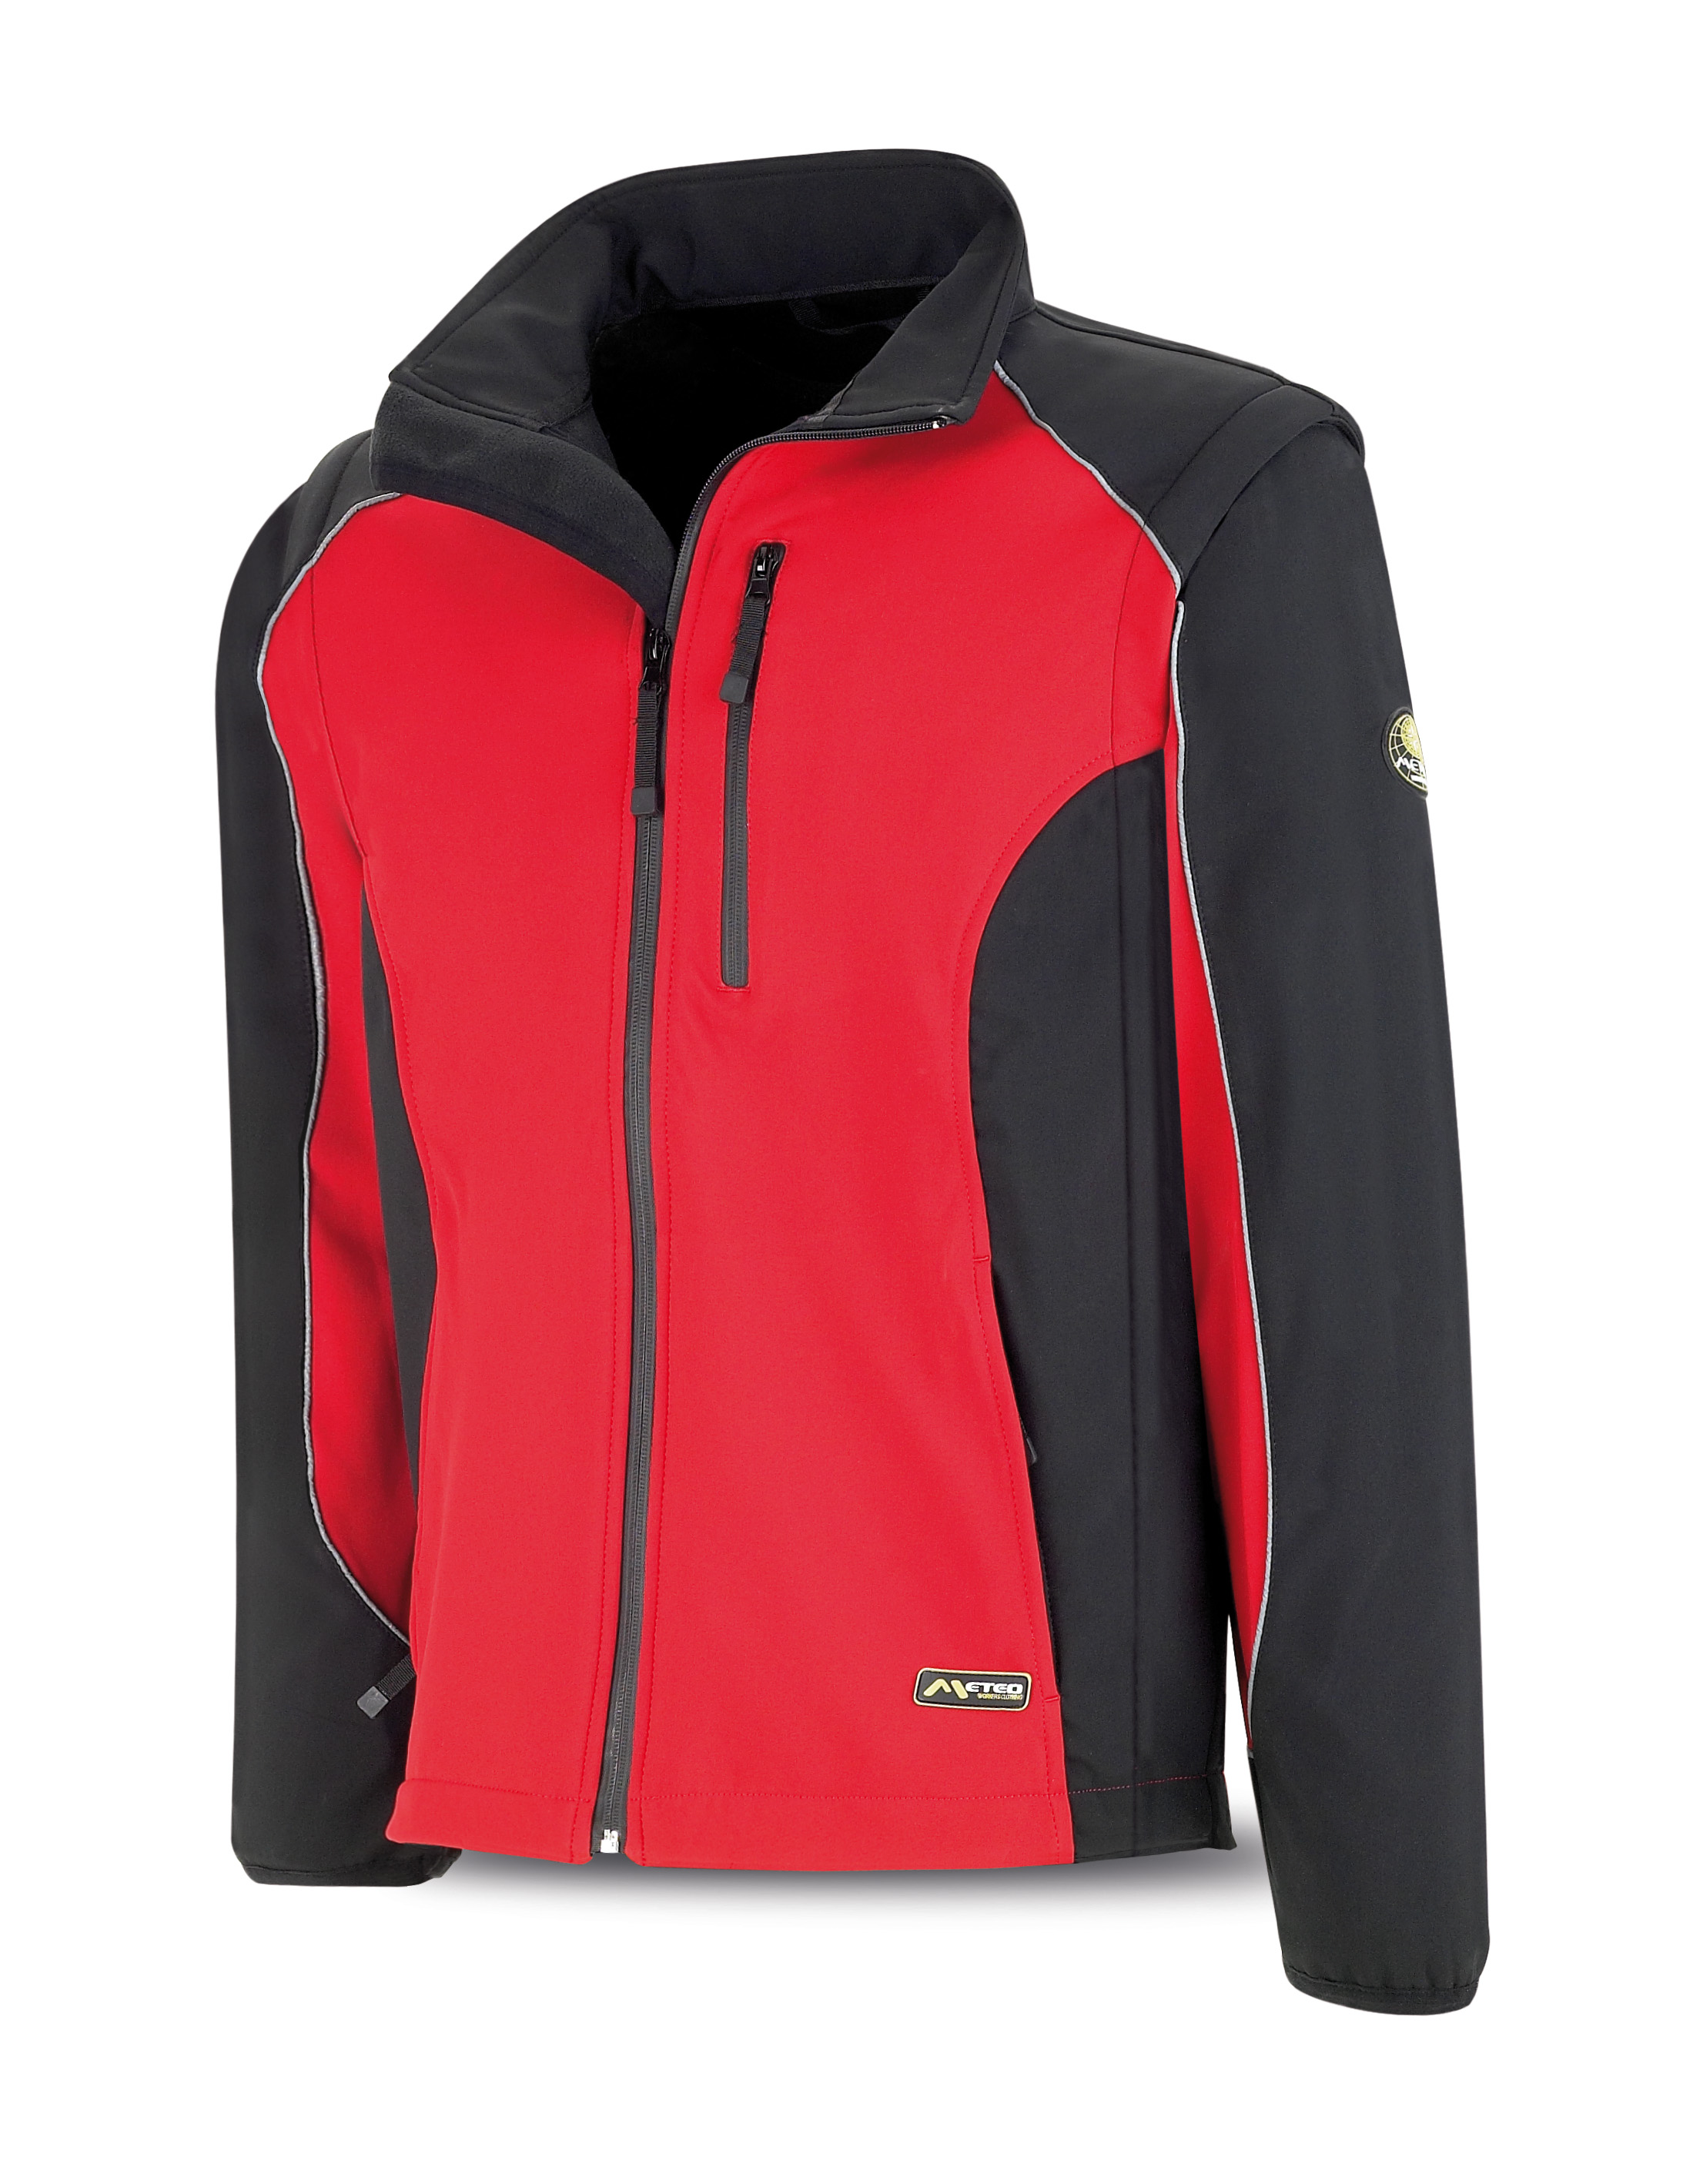 288-CSR Proteção e chuva Blusão Cazadora tipo SOFT-SHELL .Color rojo/negro